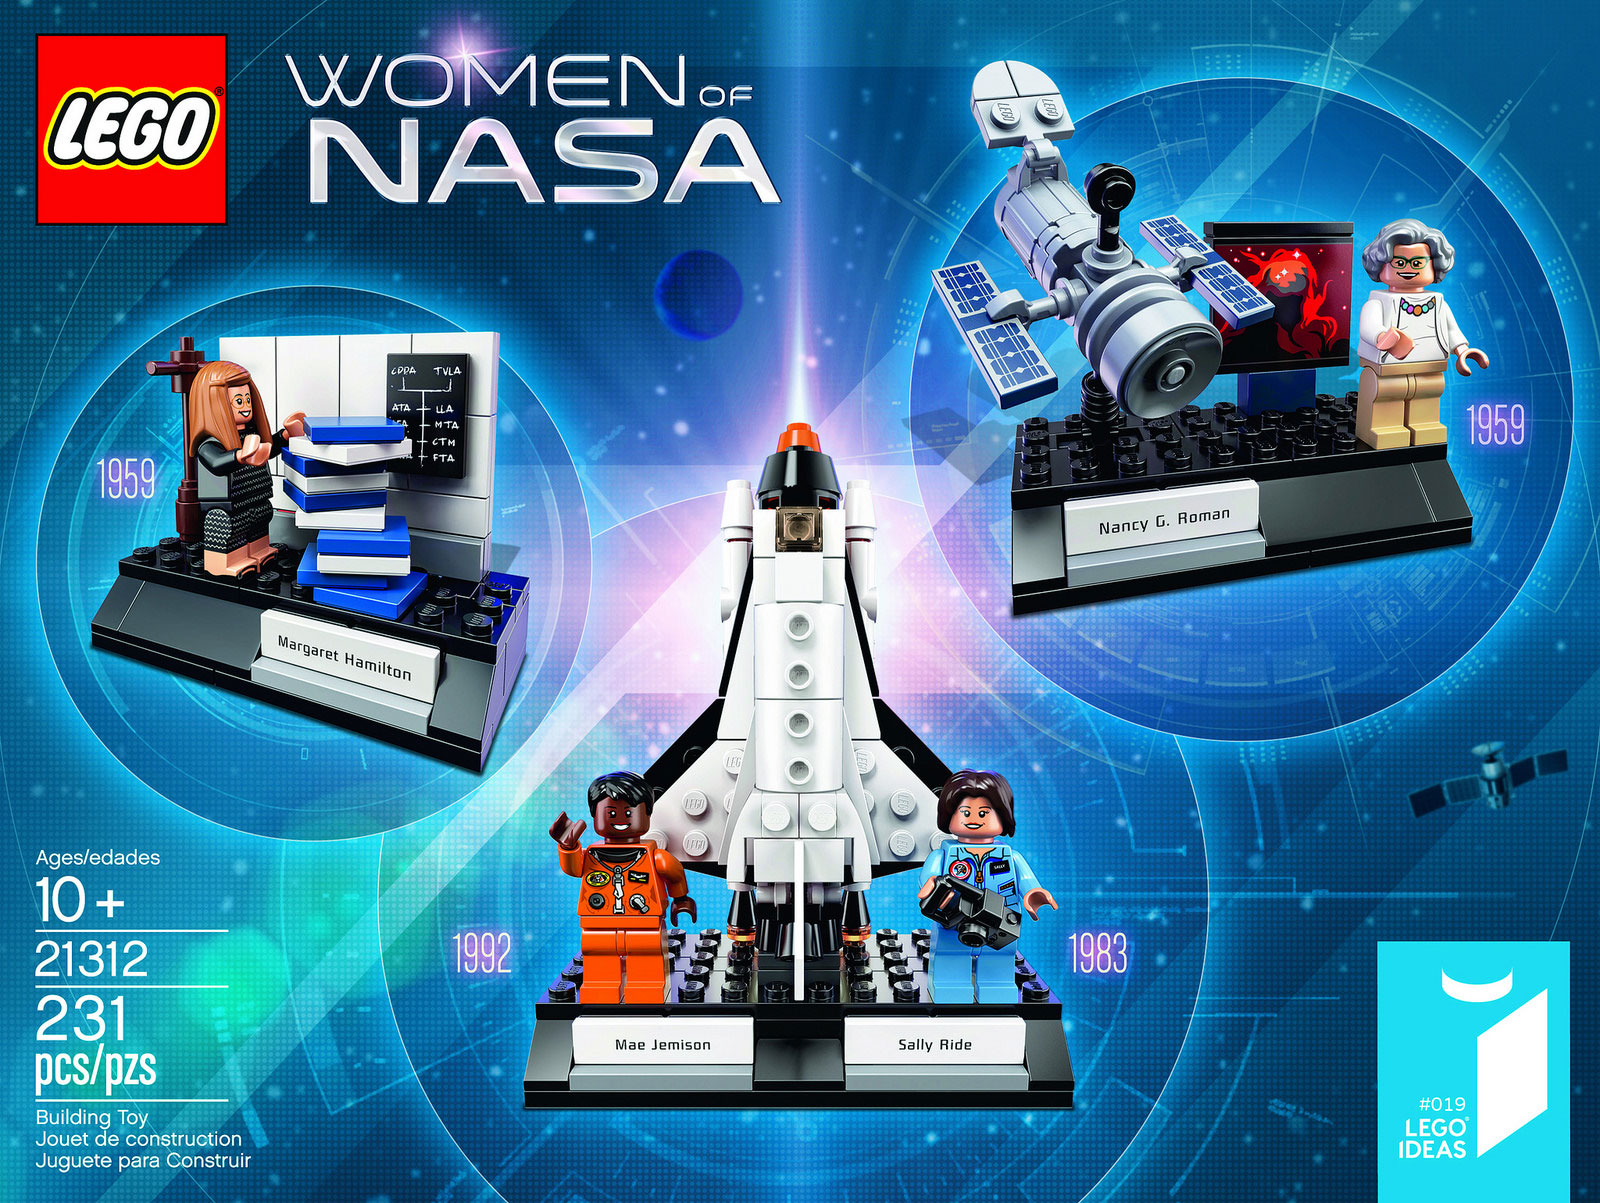 LEGO Women of NASA set revealed!